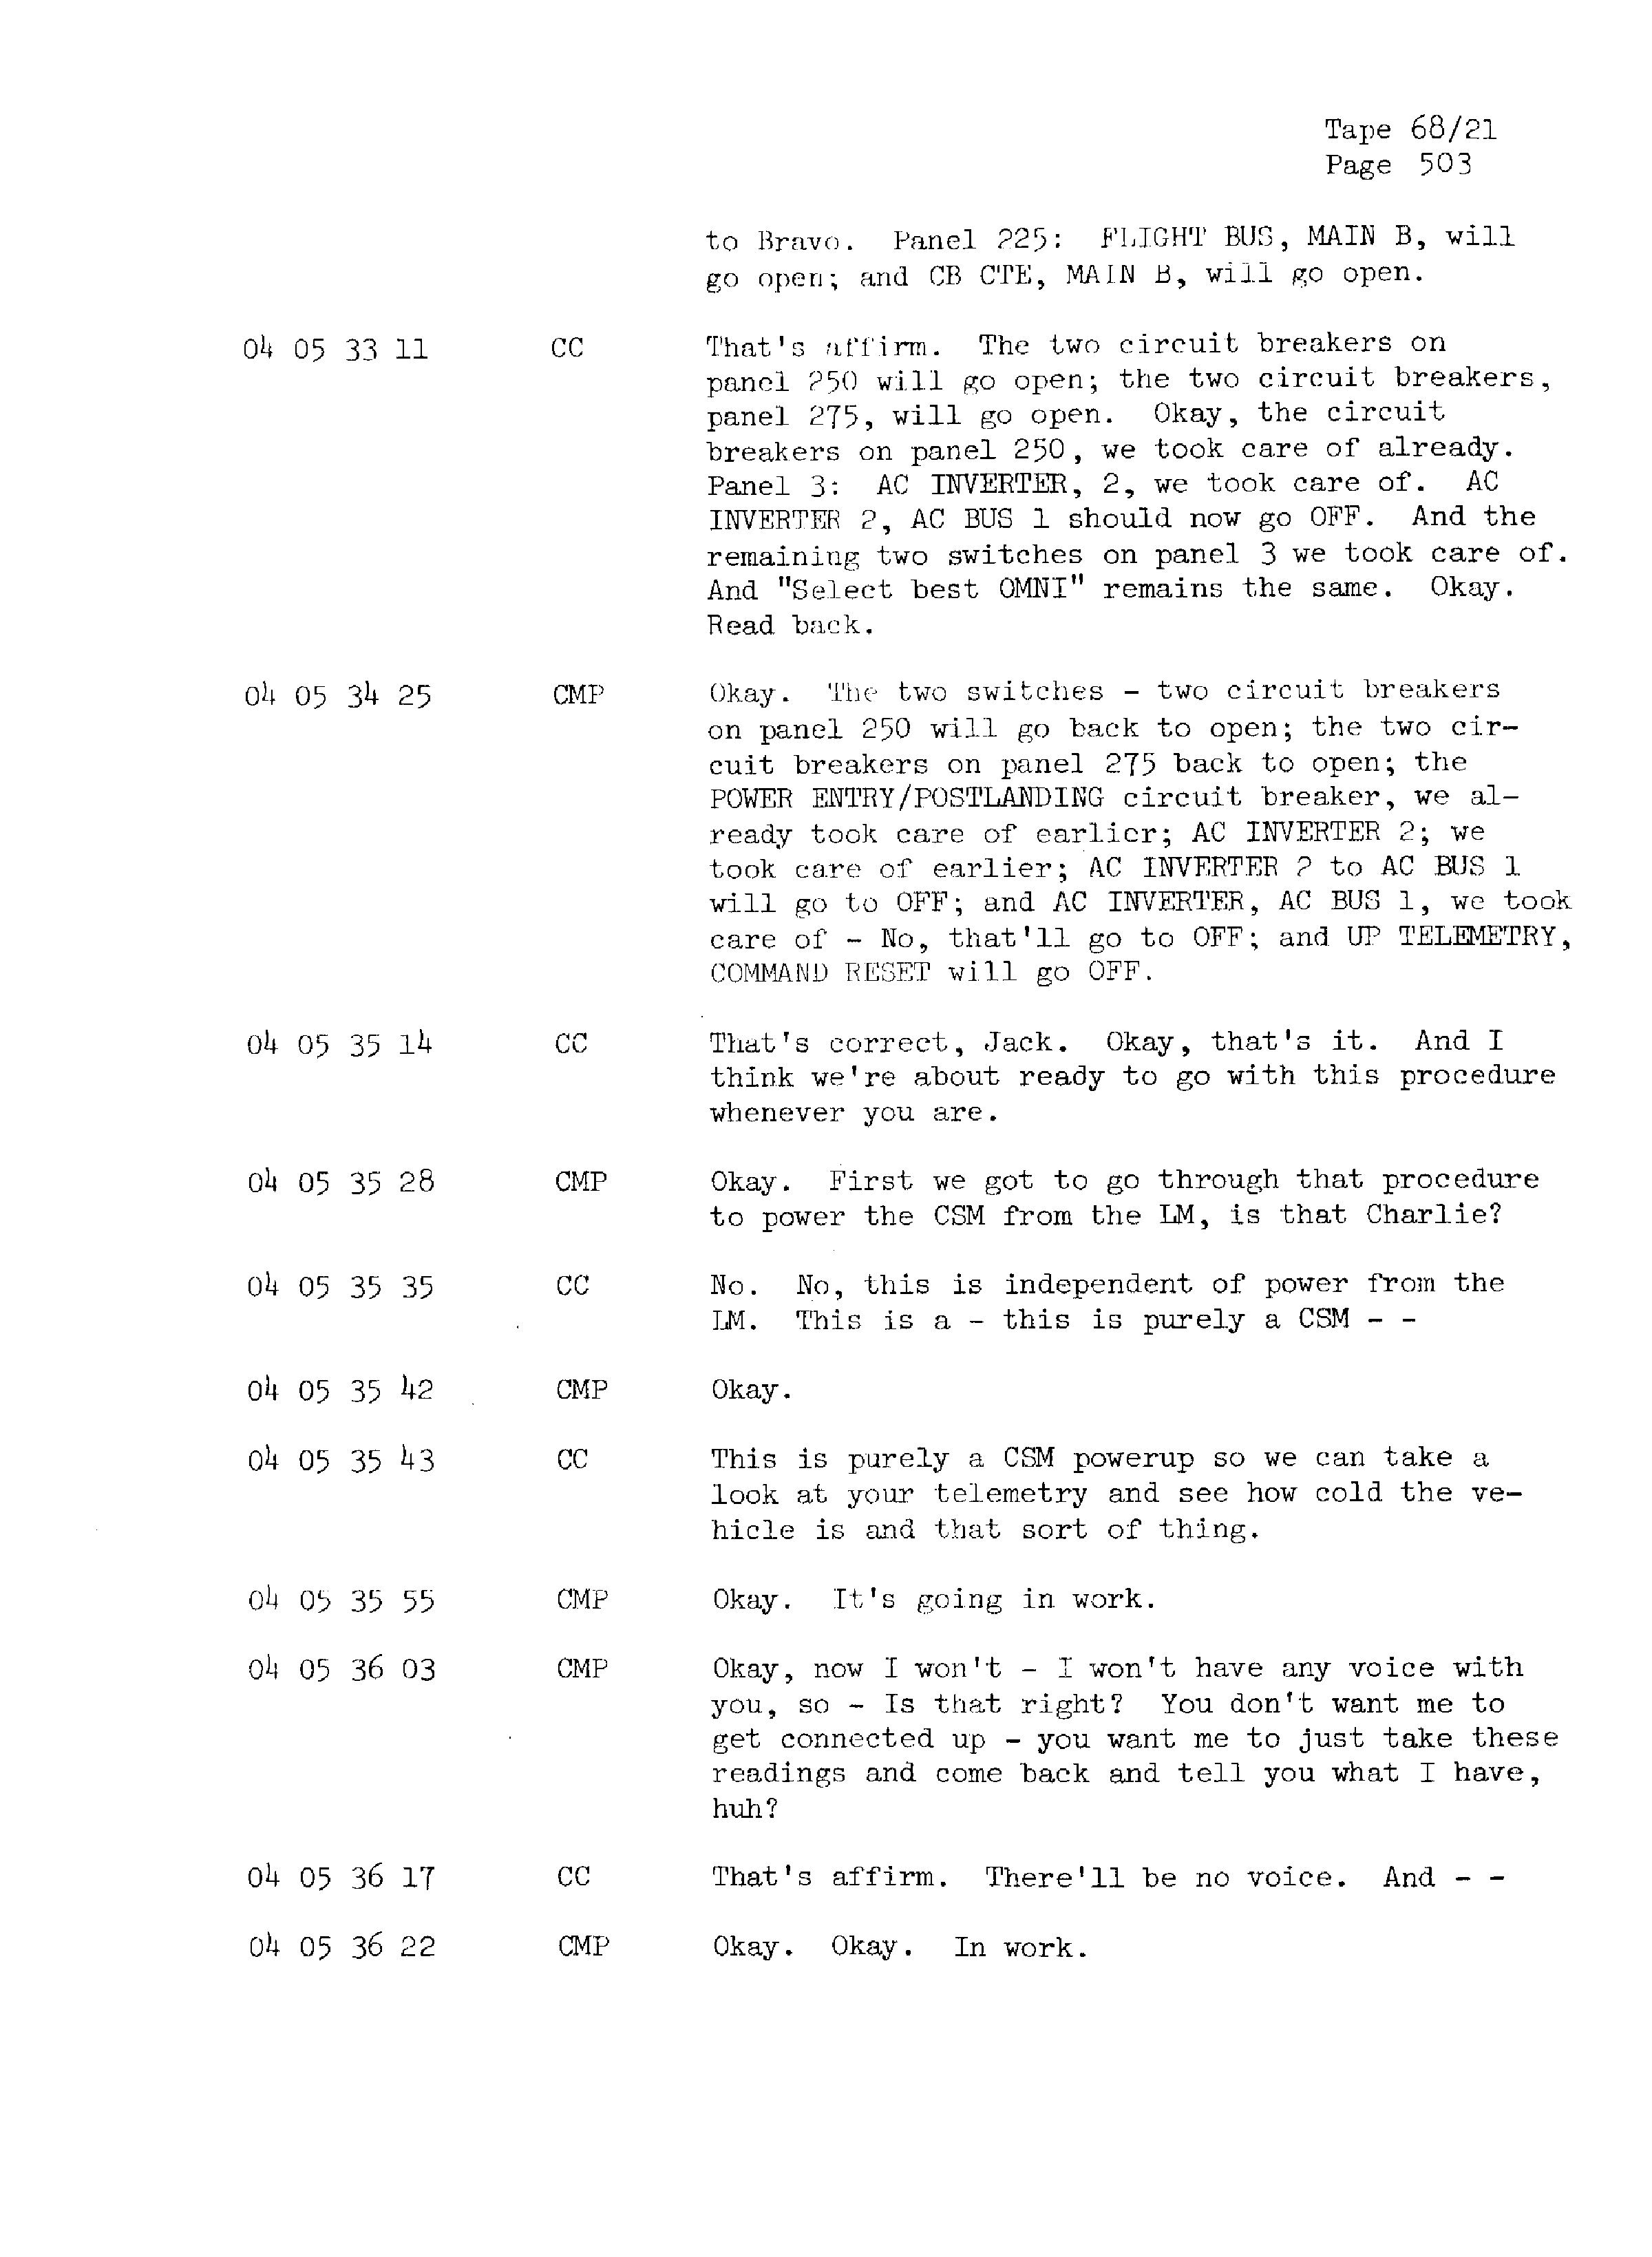 Page 510 of Apollo 13’s original transcript